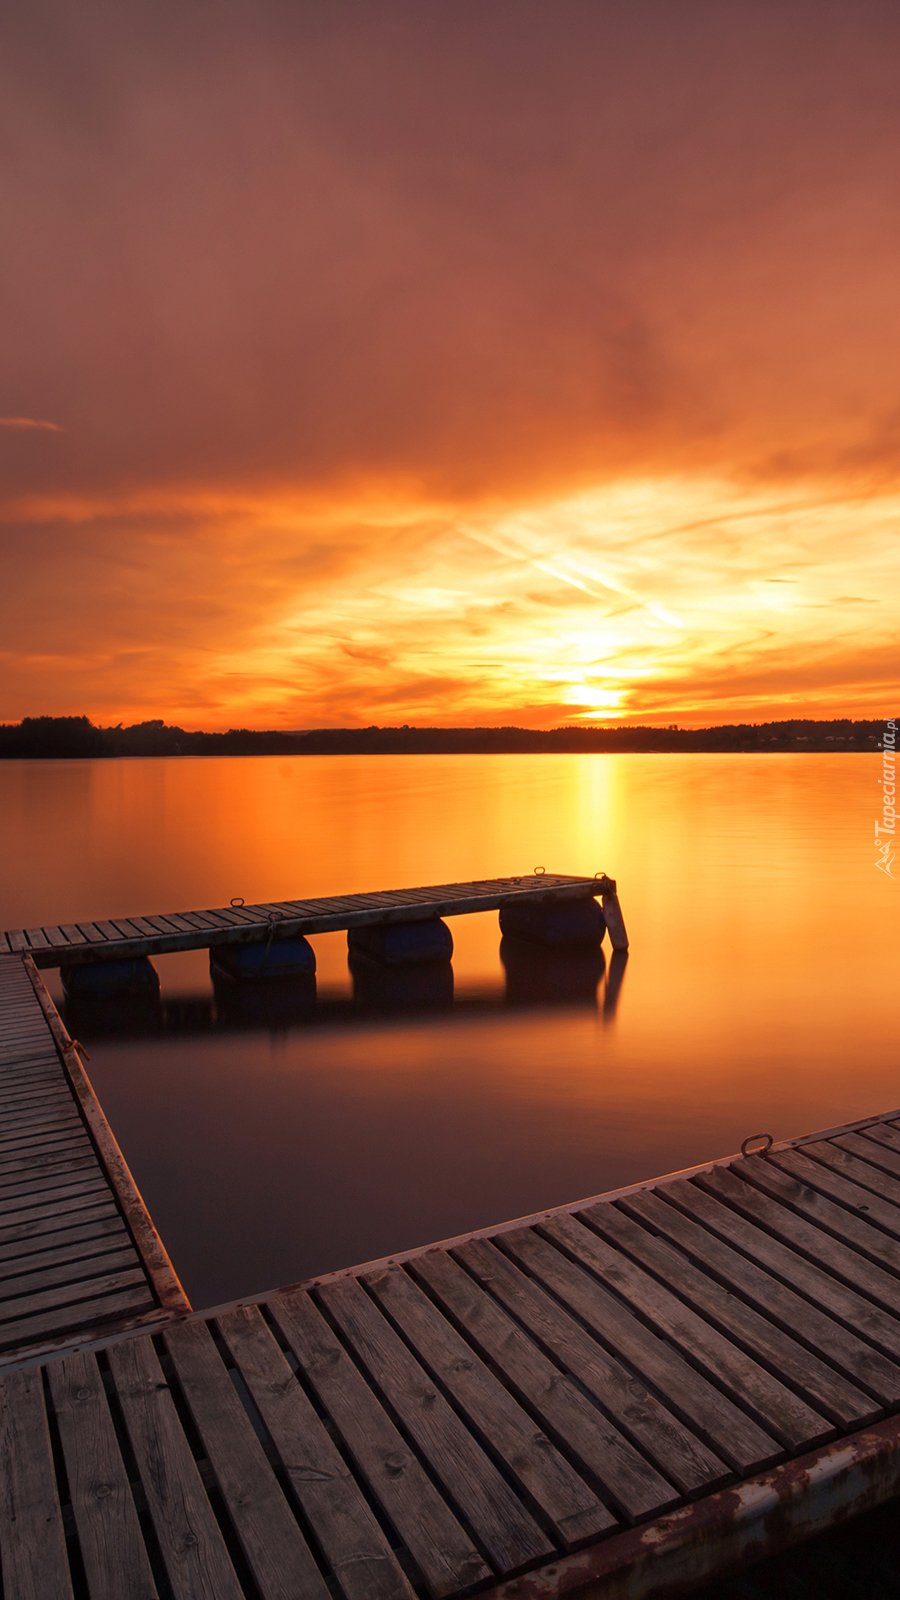 Pomost nad jeziorem w blasku zachodzącego słońca